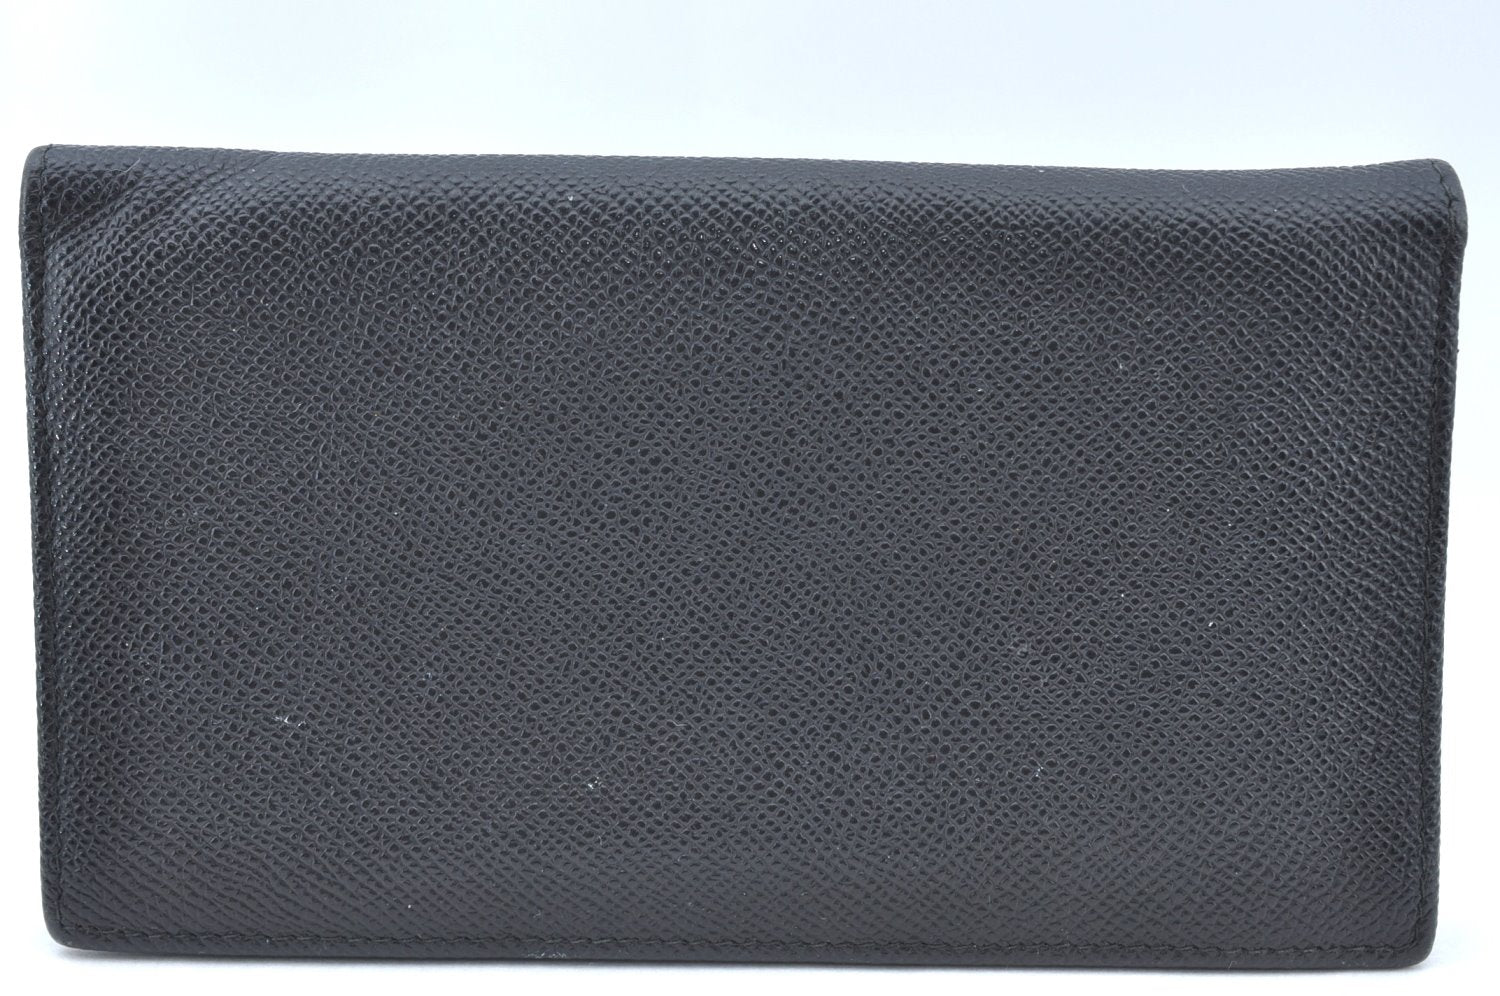 Authentic BVLGARI Vintage Leather Long Wallet Purse Black K4157